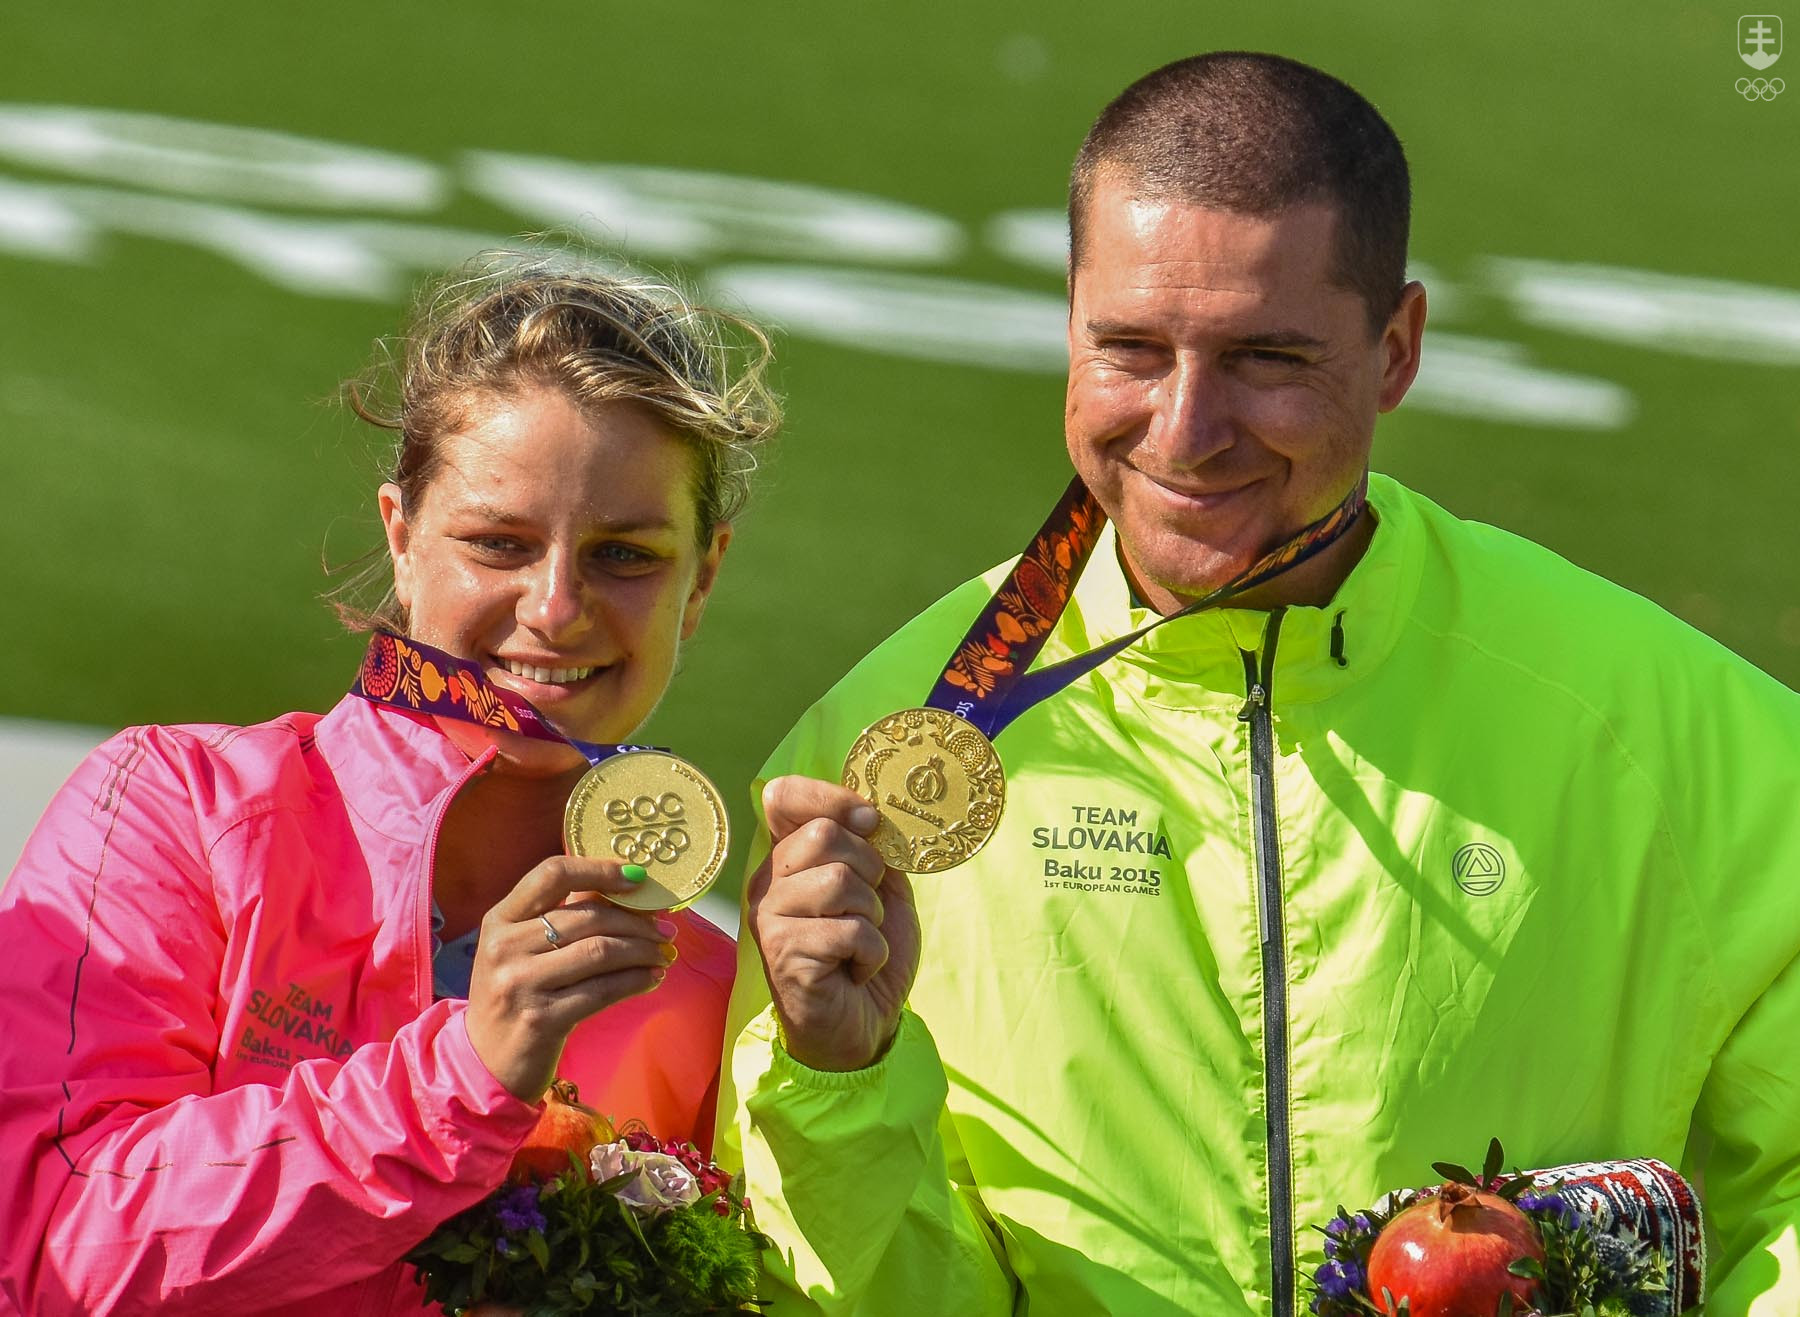 V našej výprave budú aj dvaja zlatí medailisti z premiéry EH v Baku 2015 – strelci Zuzana Rehák Štefečeková a Erik tam triumfovali v mix trape, Varga bol ešte v trape druhý.